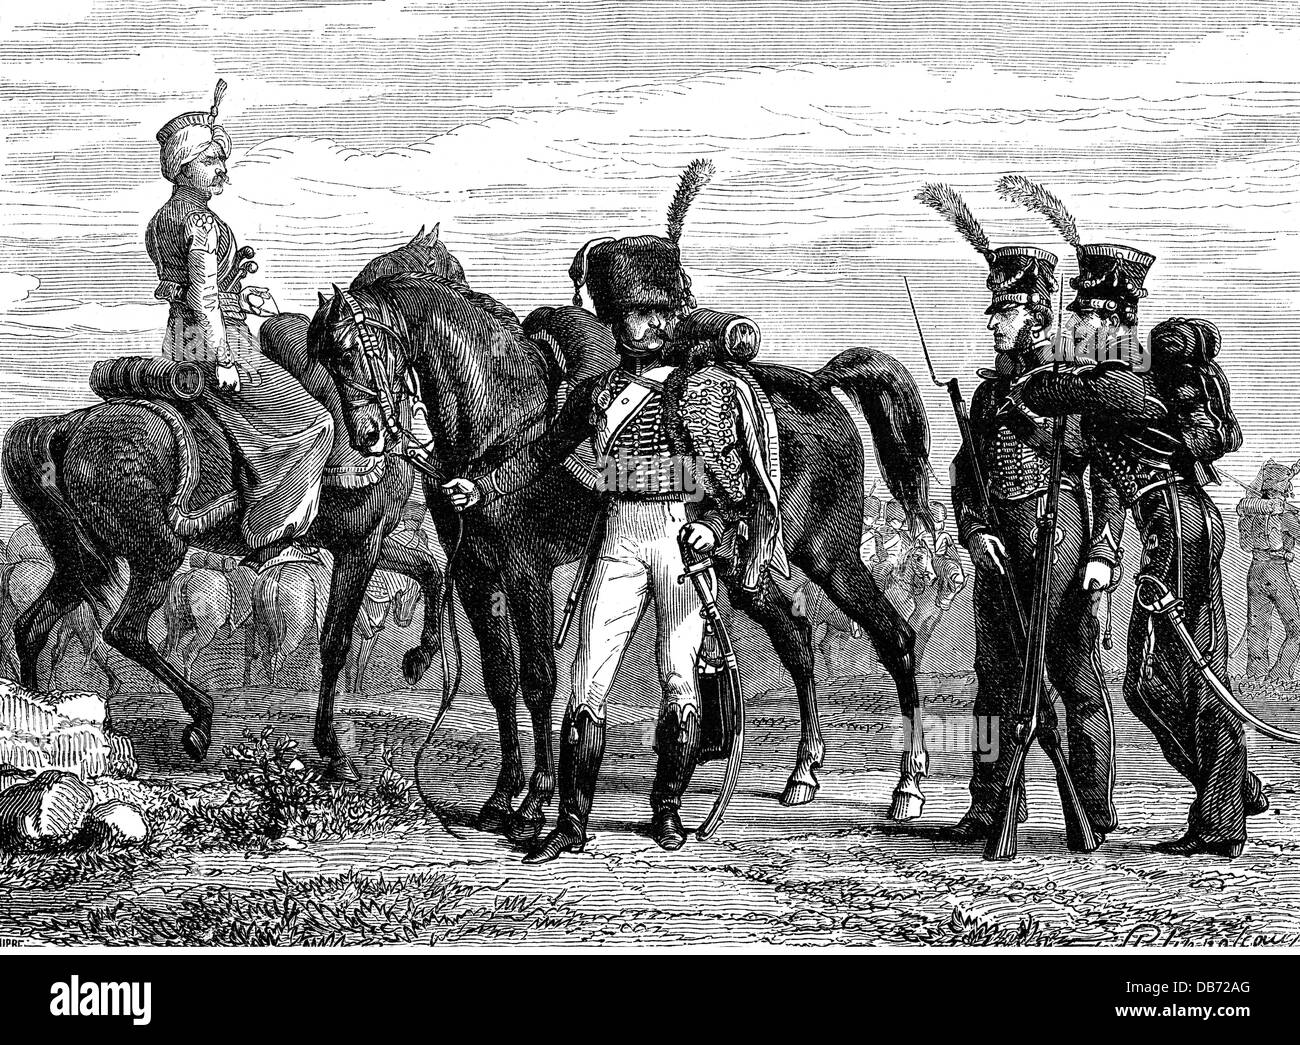 Militar, Francia, Guardia Imperial, mameluk, casseur de caballos y marines, alrededor de 1810, Derechos adicionales-Clearences-no disponible Foto de stock